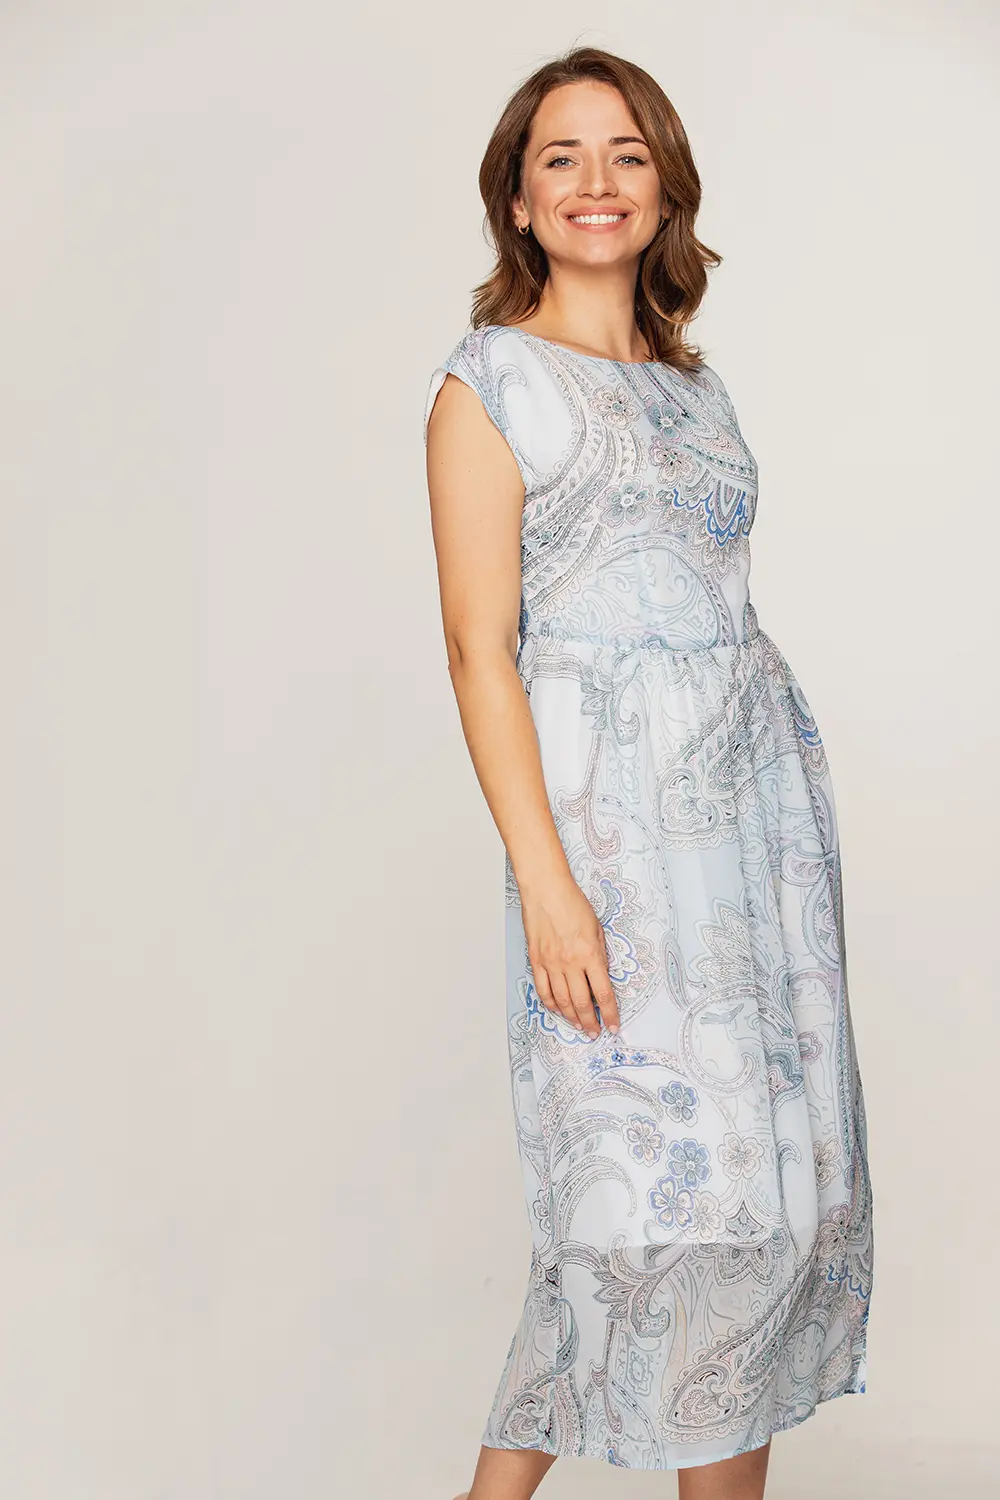 letnia sukienka odcinana szyfonowa błękitna wzor paisley polska marka